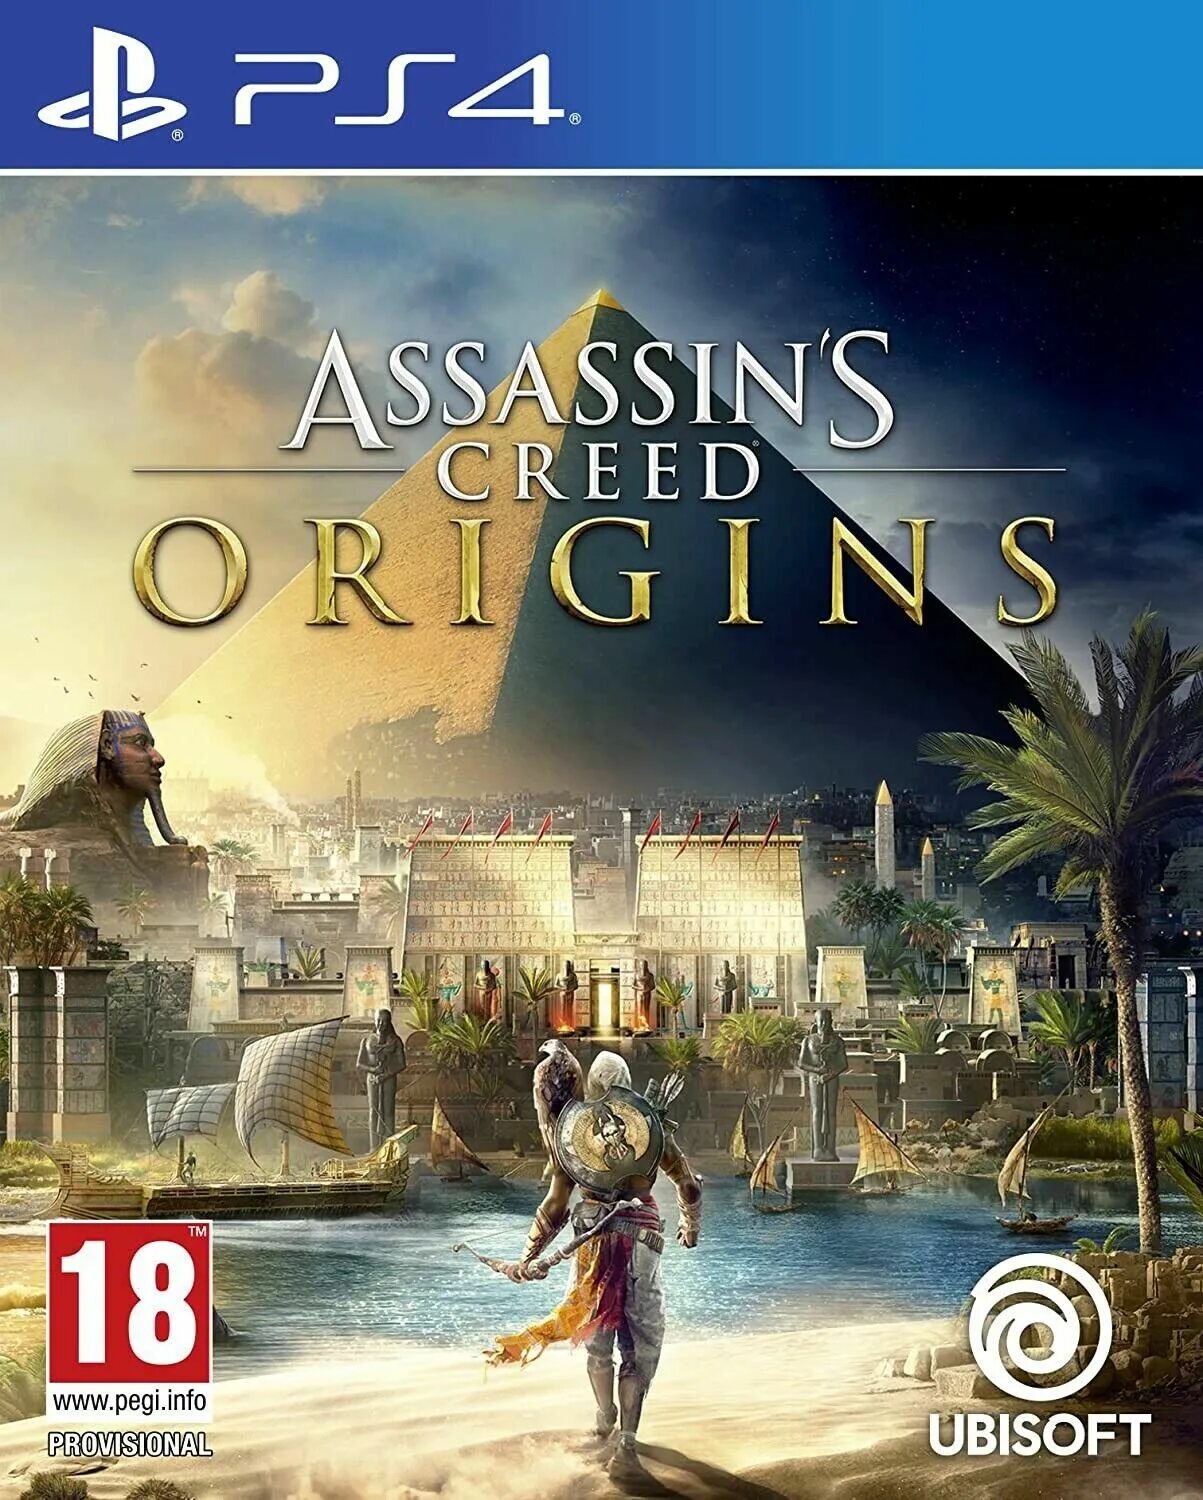 Assassin's Creed Истоки обложка. Assassin’s Creed Origins обложка. Купить асасин ориджинс на ПС 4. Assassin’s Creed Identity обложка. Ubisoft ps4